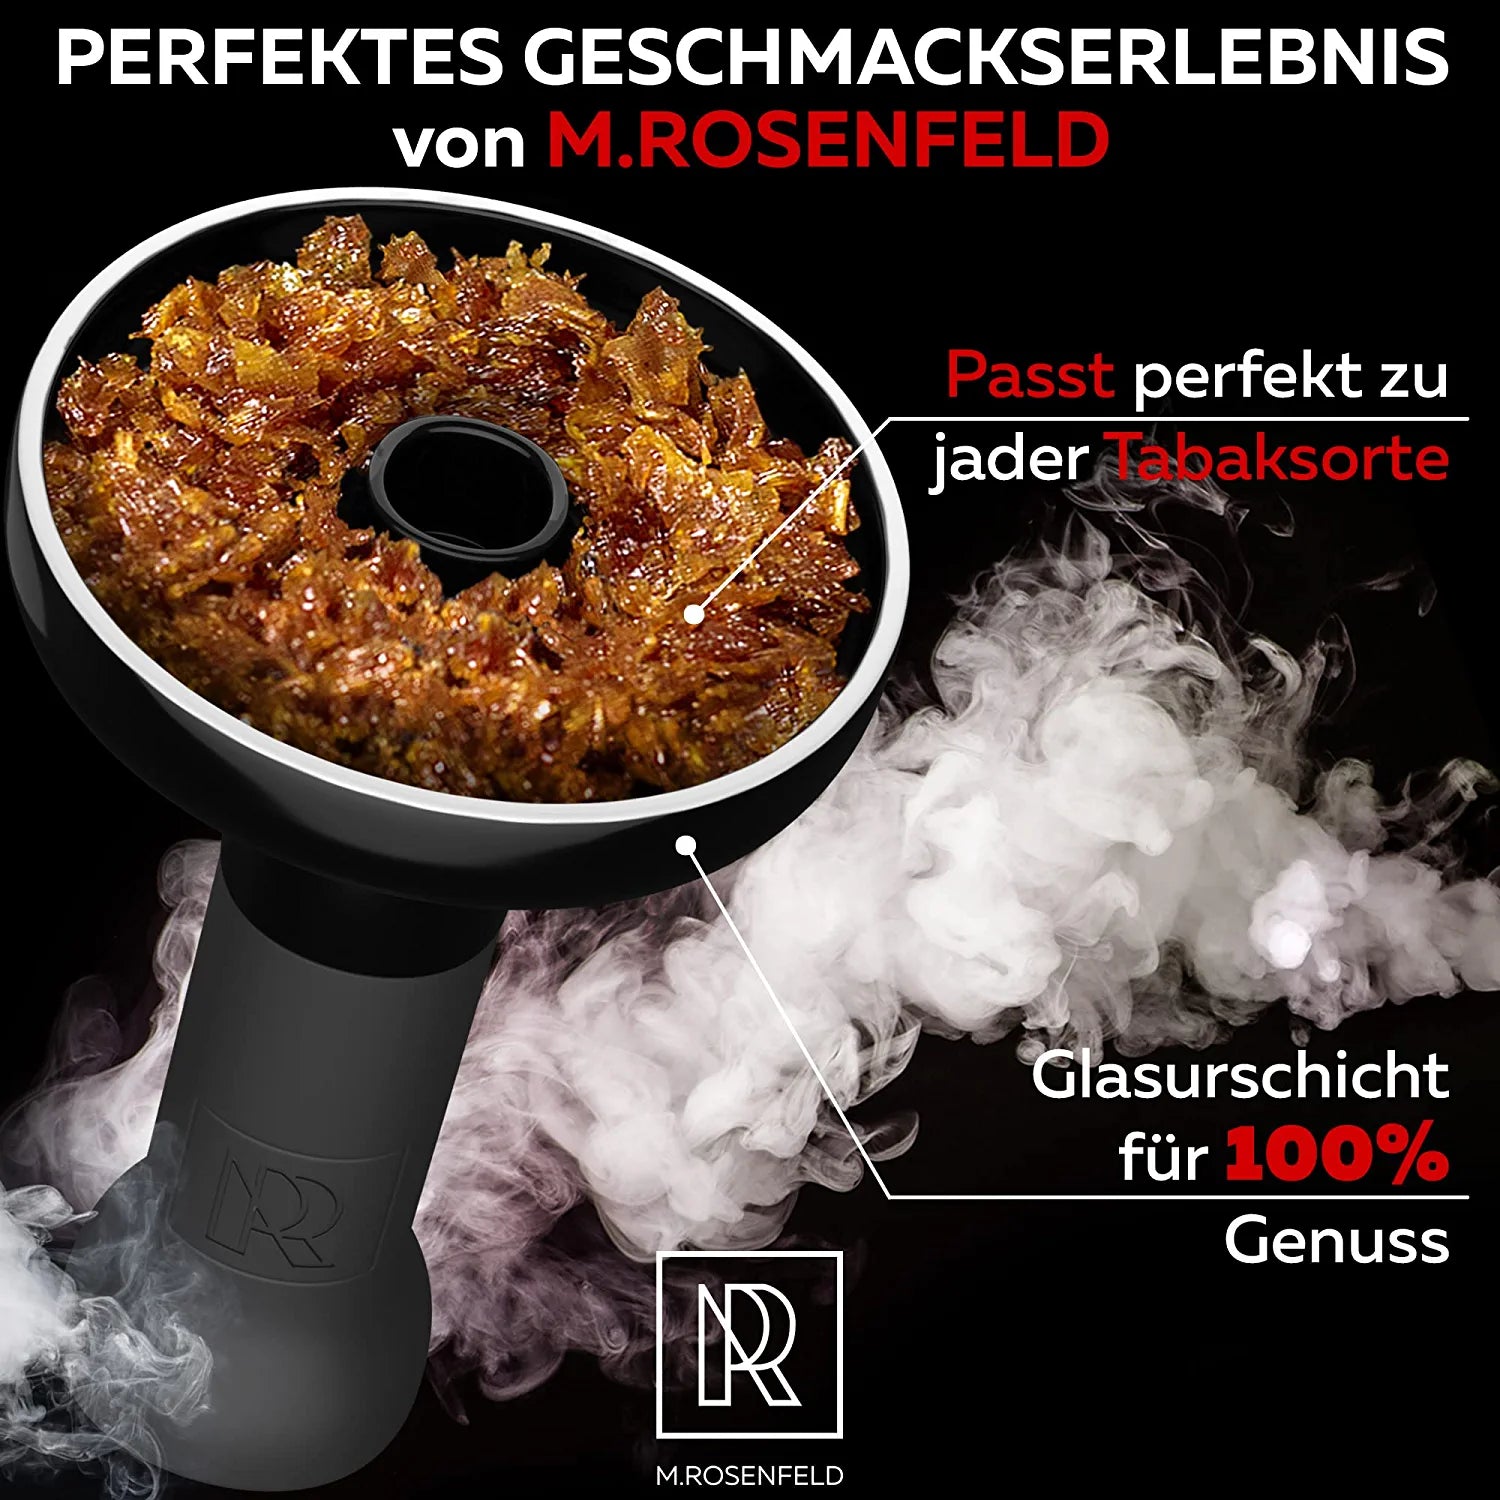 ROSENFELD Smokebox Shisha Kopf - Premium Phunnel Kopf Mit Smokebox (fasst 10g Shisha Tabak), Kaminaufsatz Shisha - Selbstdichtender